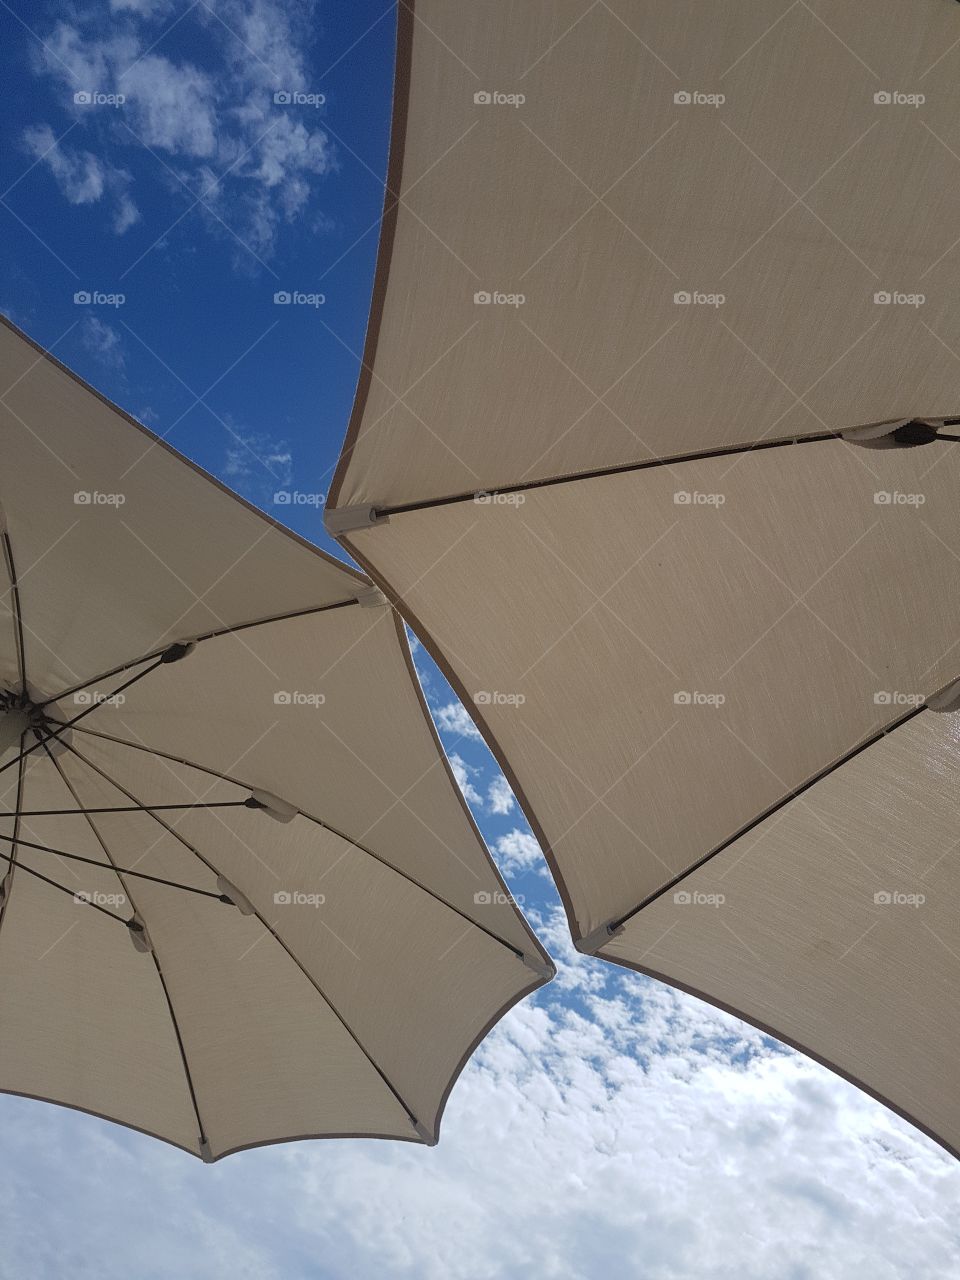 White beach umbrellas against blue sky in summertime